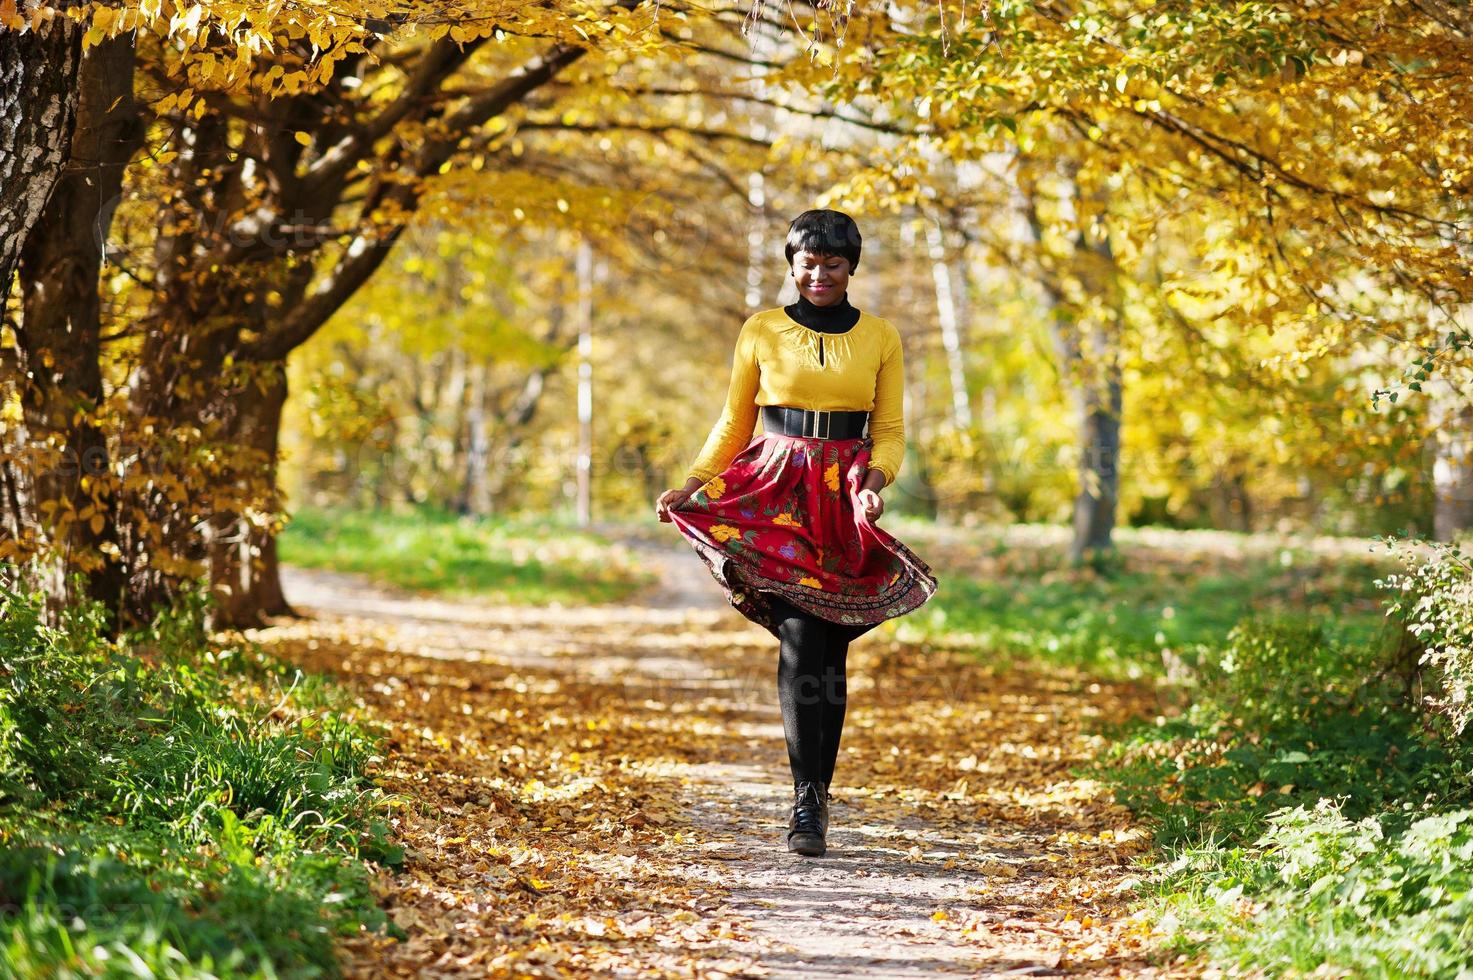 niña afroamericana con vestido amarillo y rojo en el parque de otoño dorado. foto